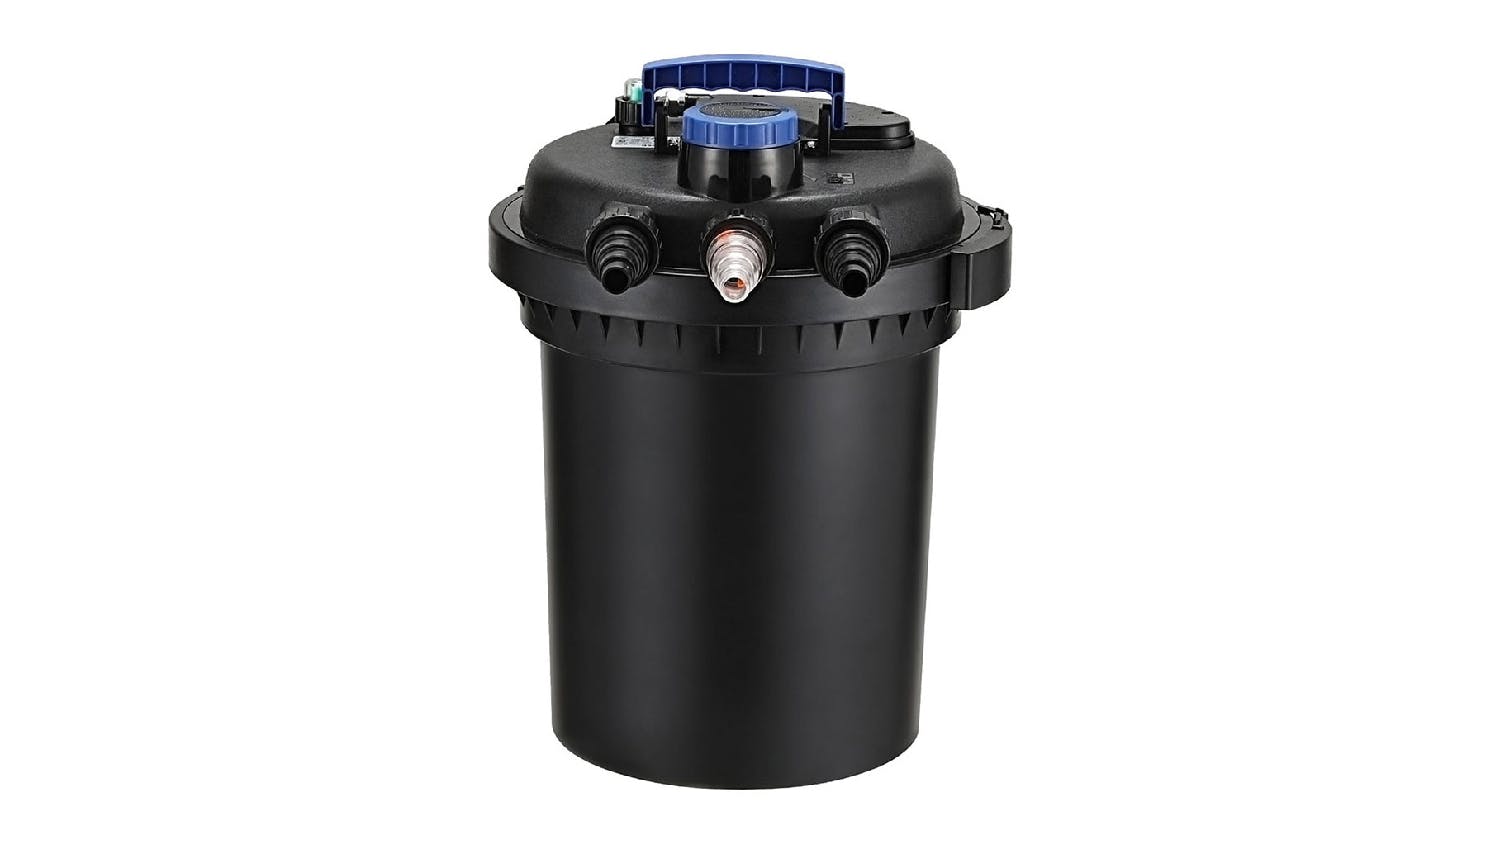 Giantz External Water Pump & Filter for Aqauriums 10,000L/Hr